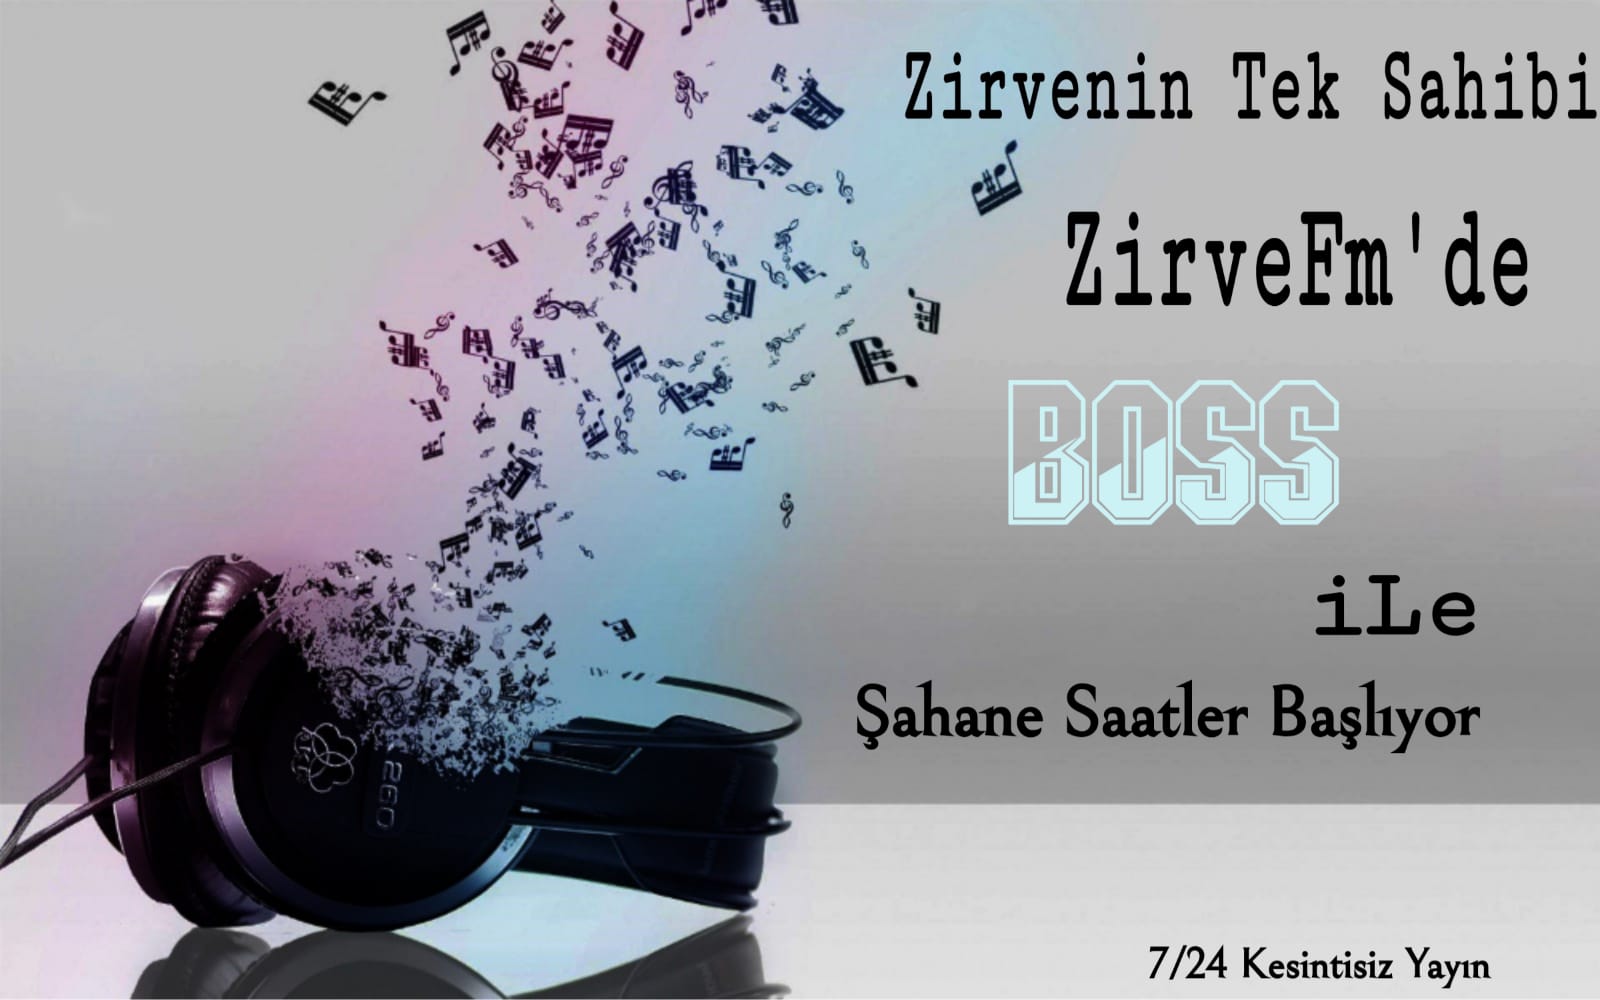 Zirve FM'de DJ - BOSS Yaynda.